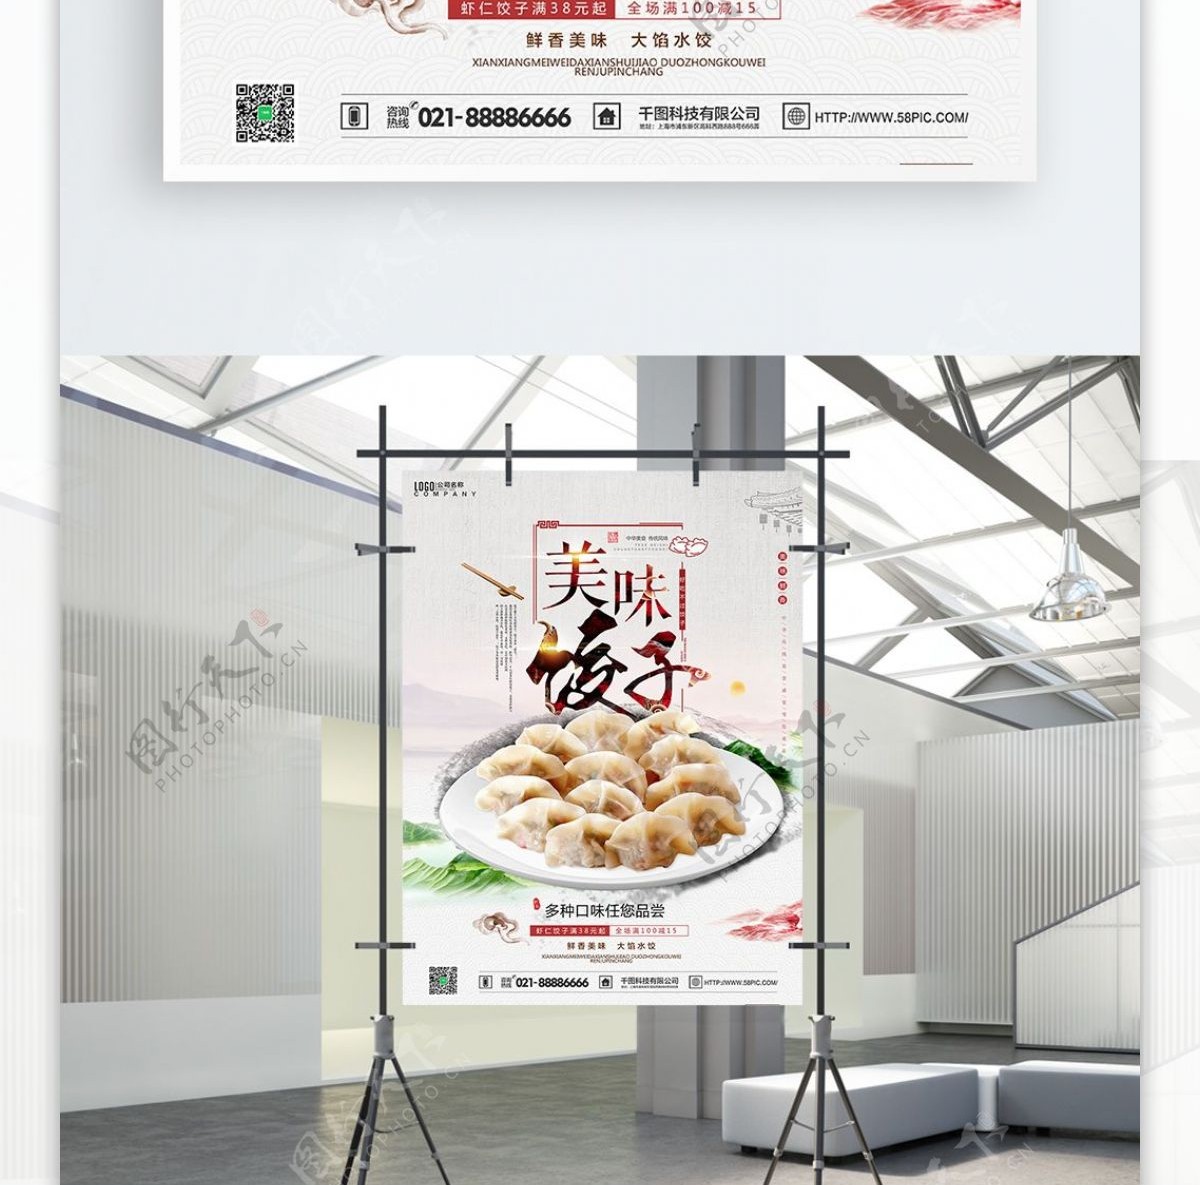 清新中国风美食美味饺子活动促销海报